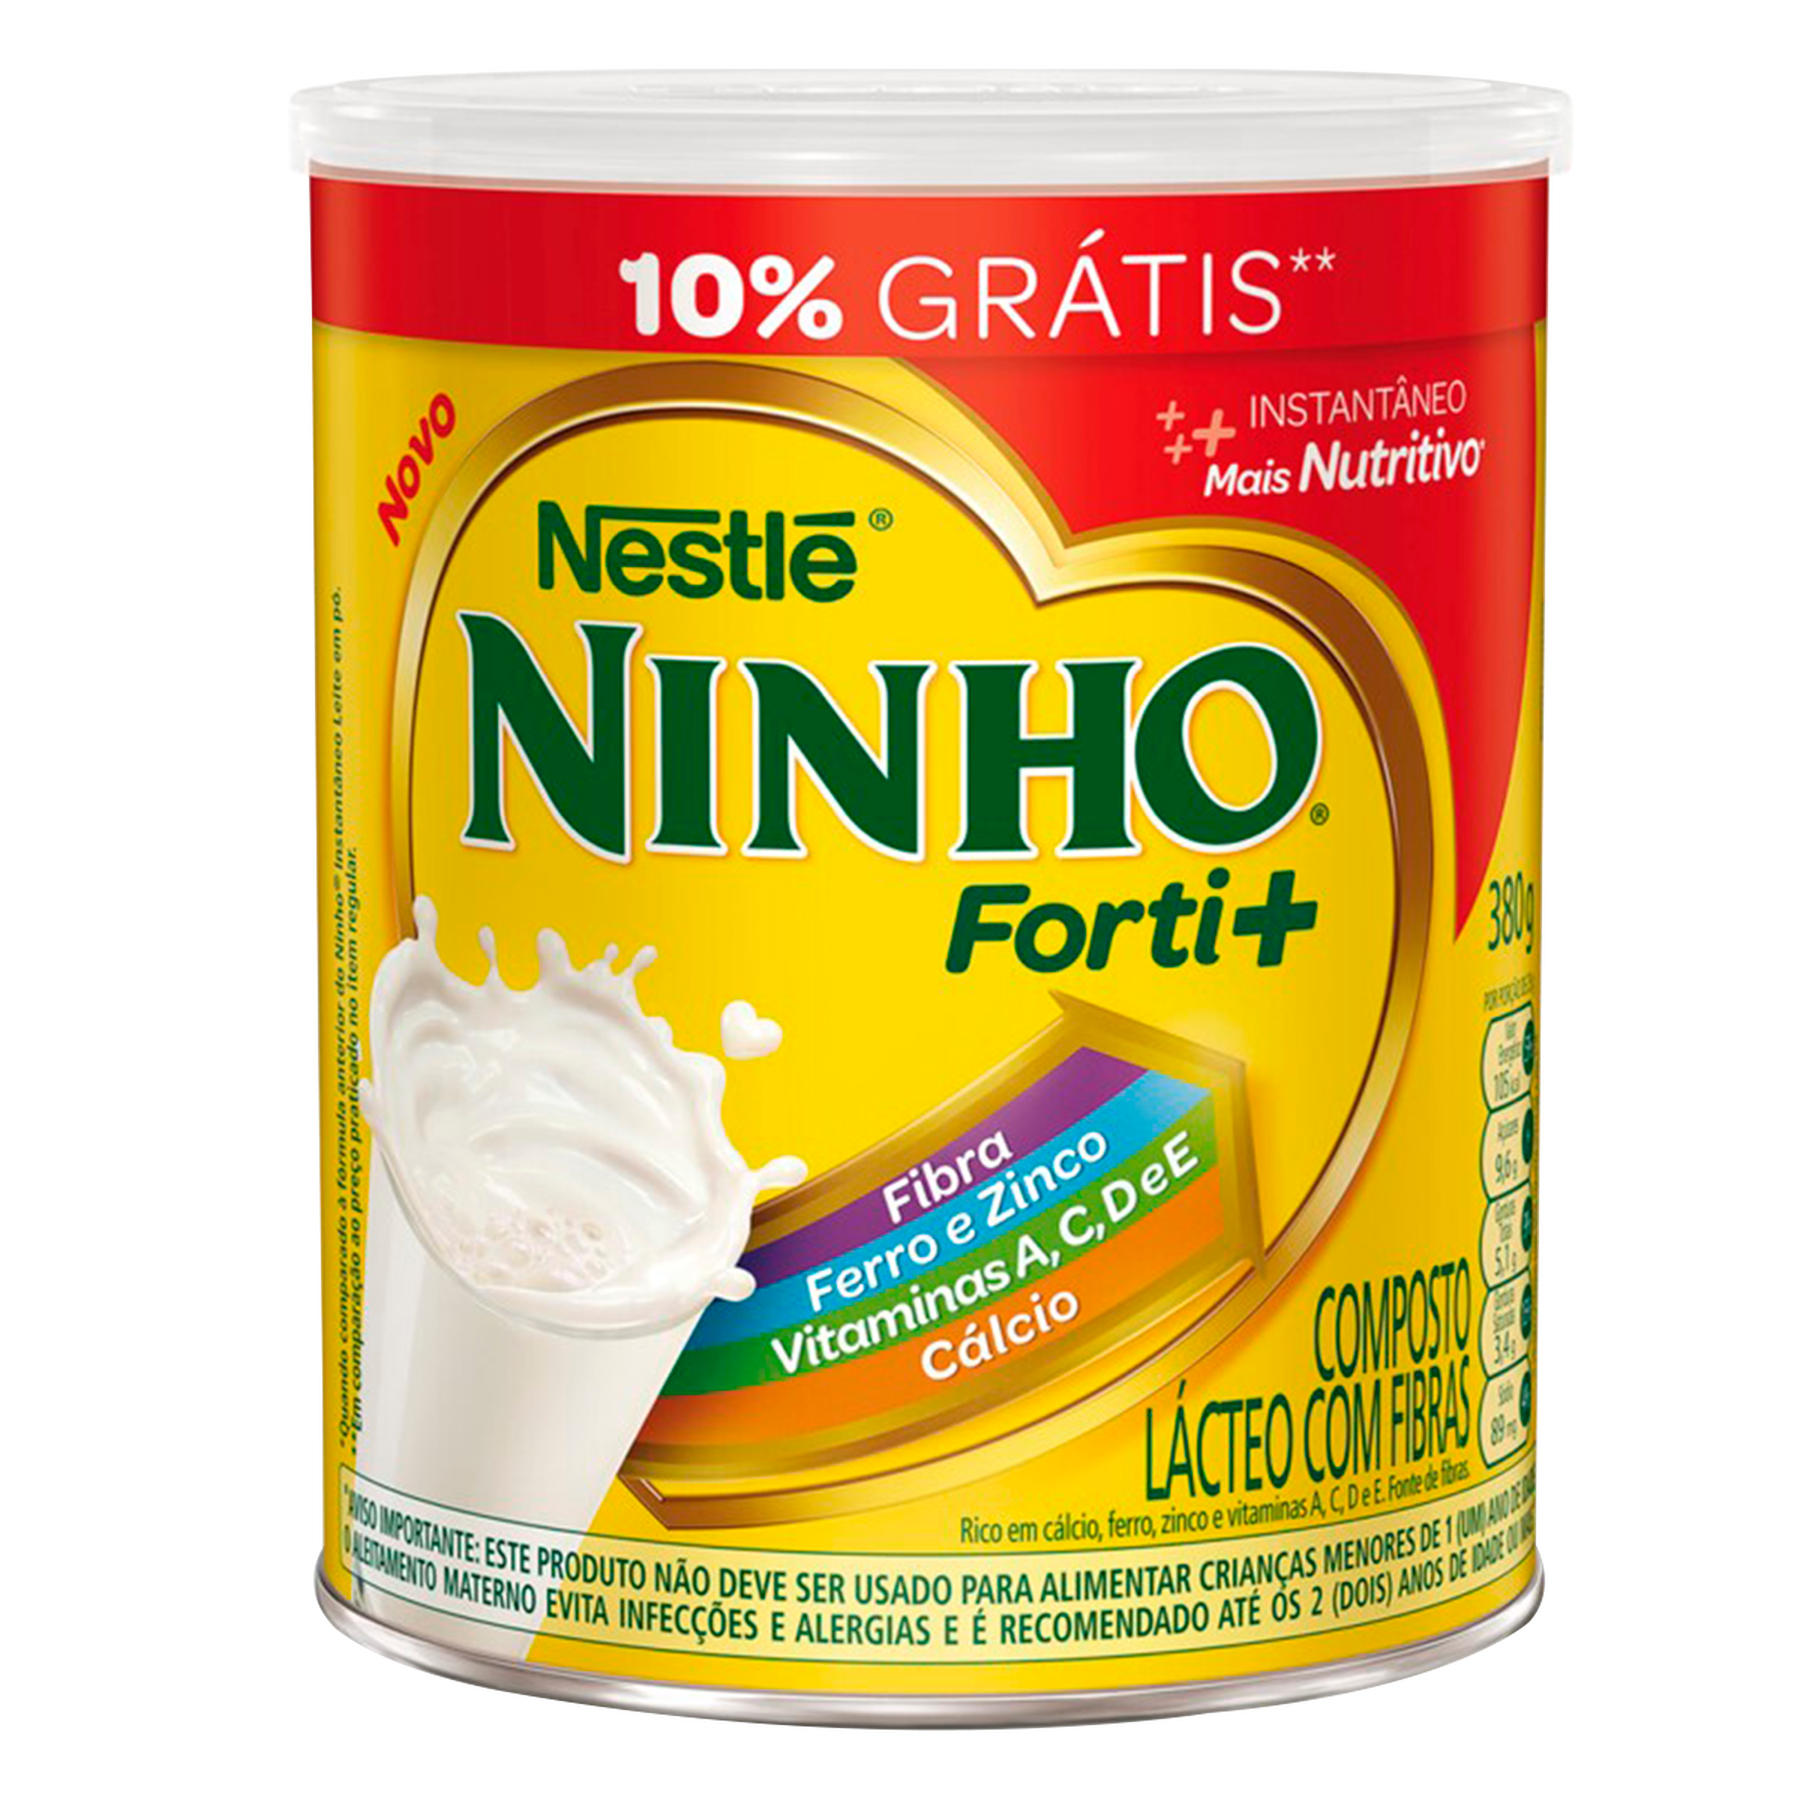 Composto Lácteo Ninho Forti+ Nestlé Lata 380g - Embalagem 10% Grátis